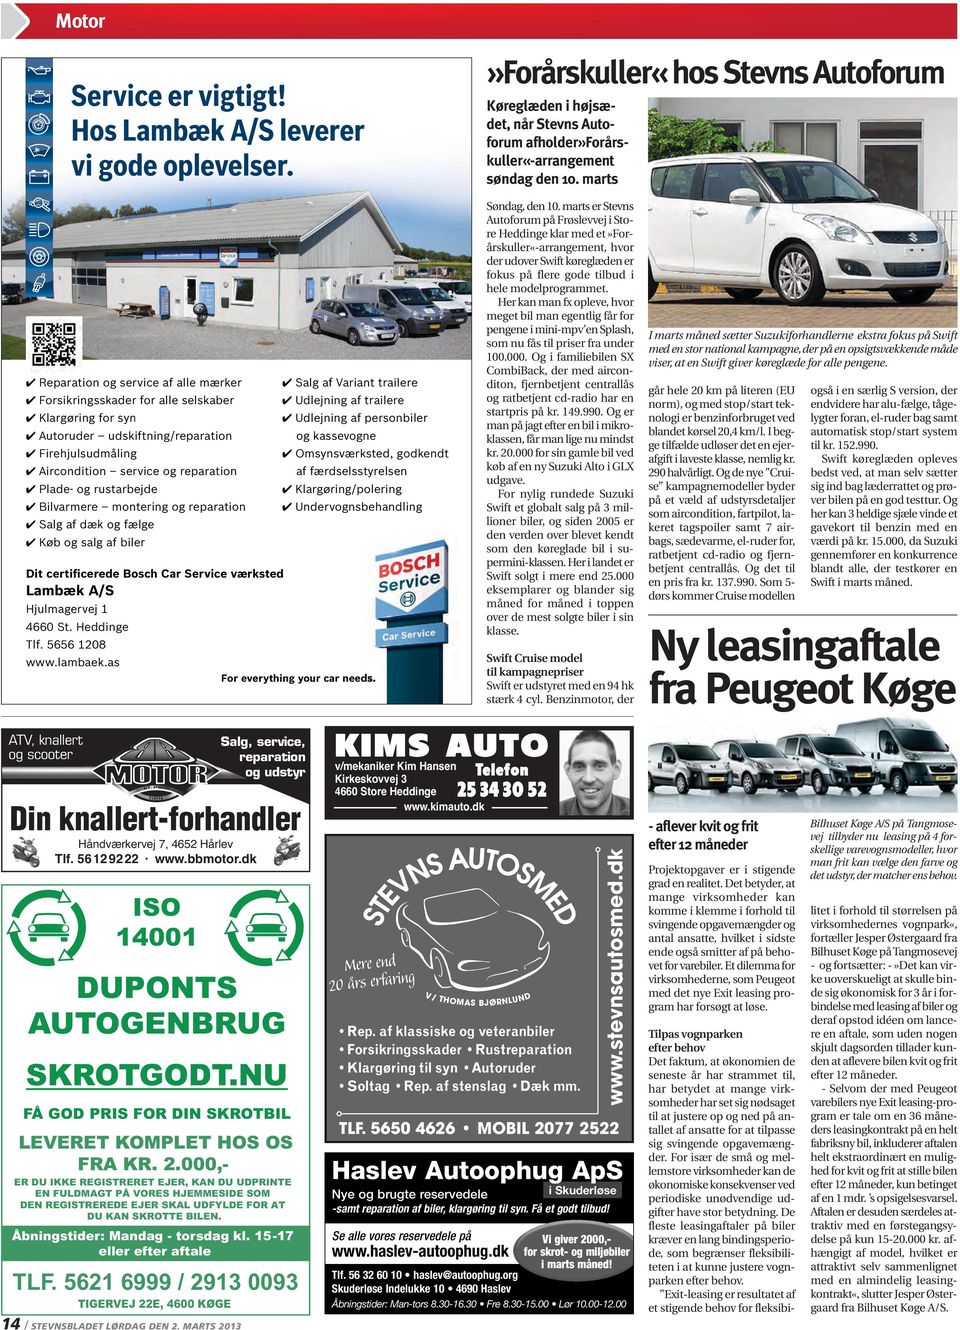 rustarbejde Bilvarmere montering og reparation Salg af dæk og fælge Køb og salg af biler Dit certificerede Bosch Car Service værksted Lambæk A/S Hjulmagervej 1 4660 St. Heddinge Tlf. 5656 1208 www.